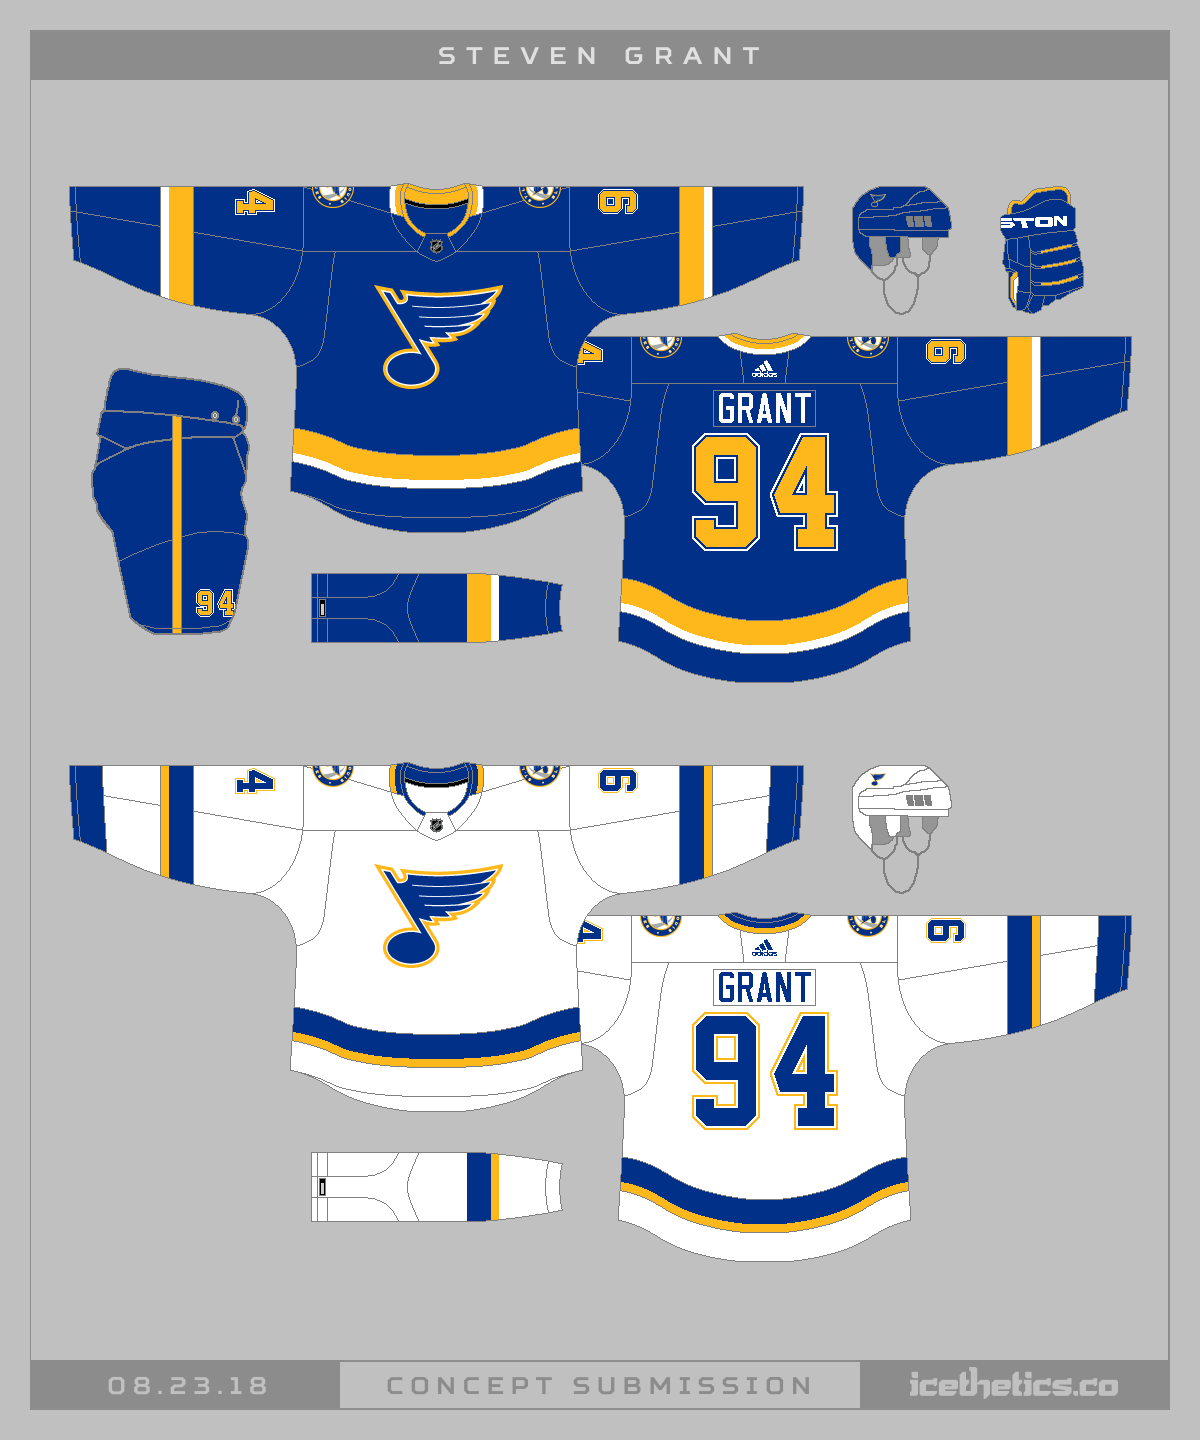 St. Louis Blues unveil new jerseys